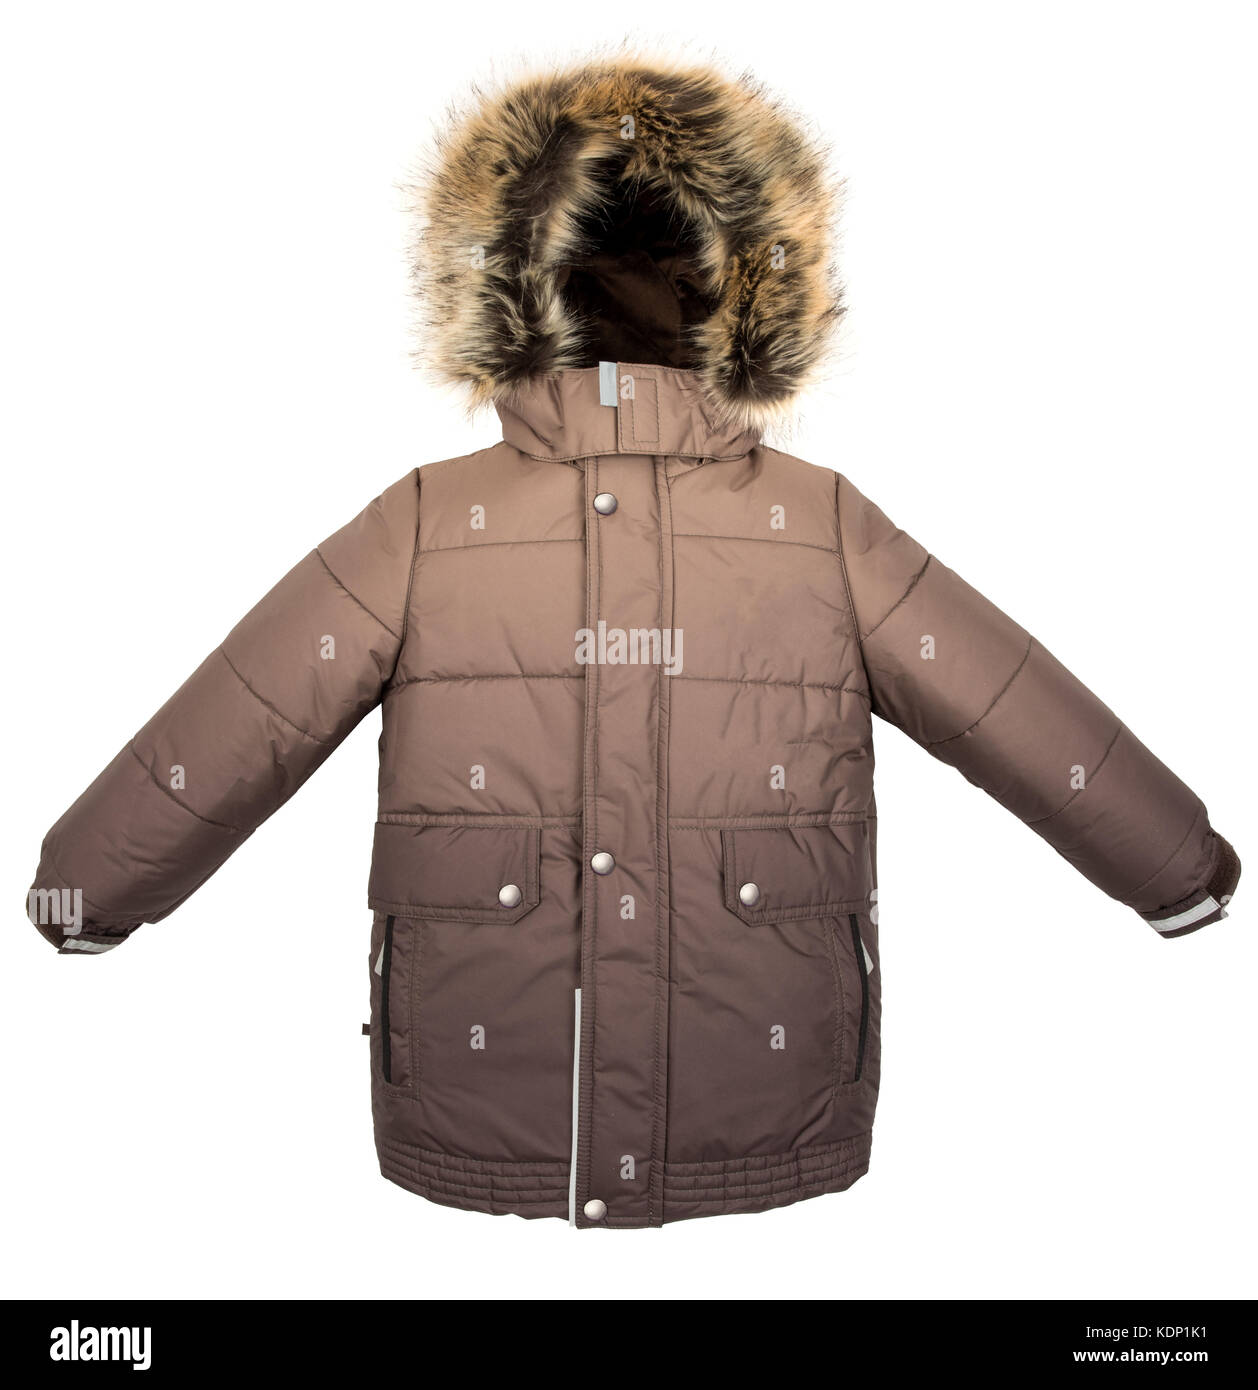 Winter warm jacket isolated on white background Stock Photo